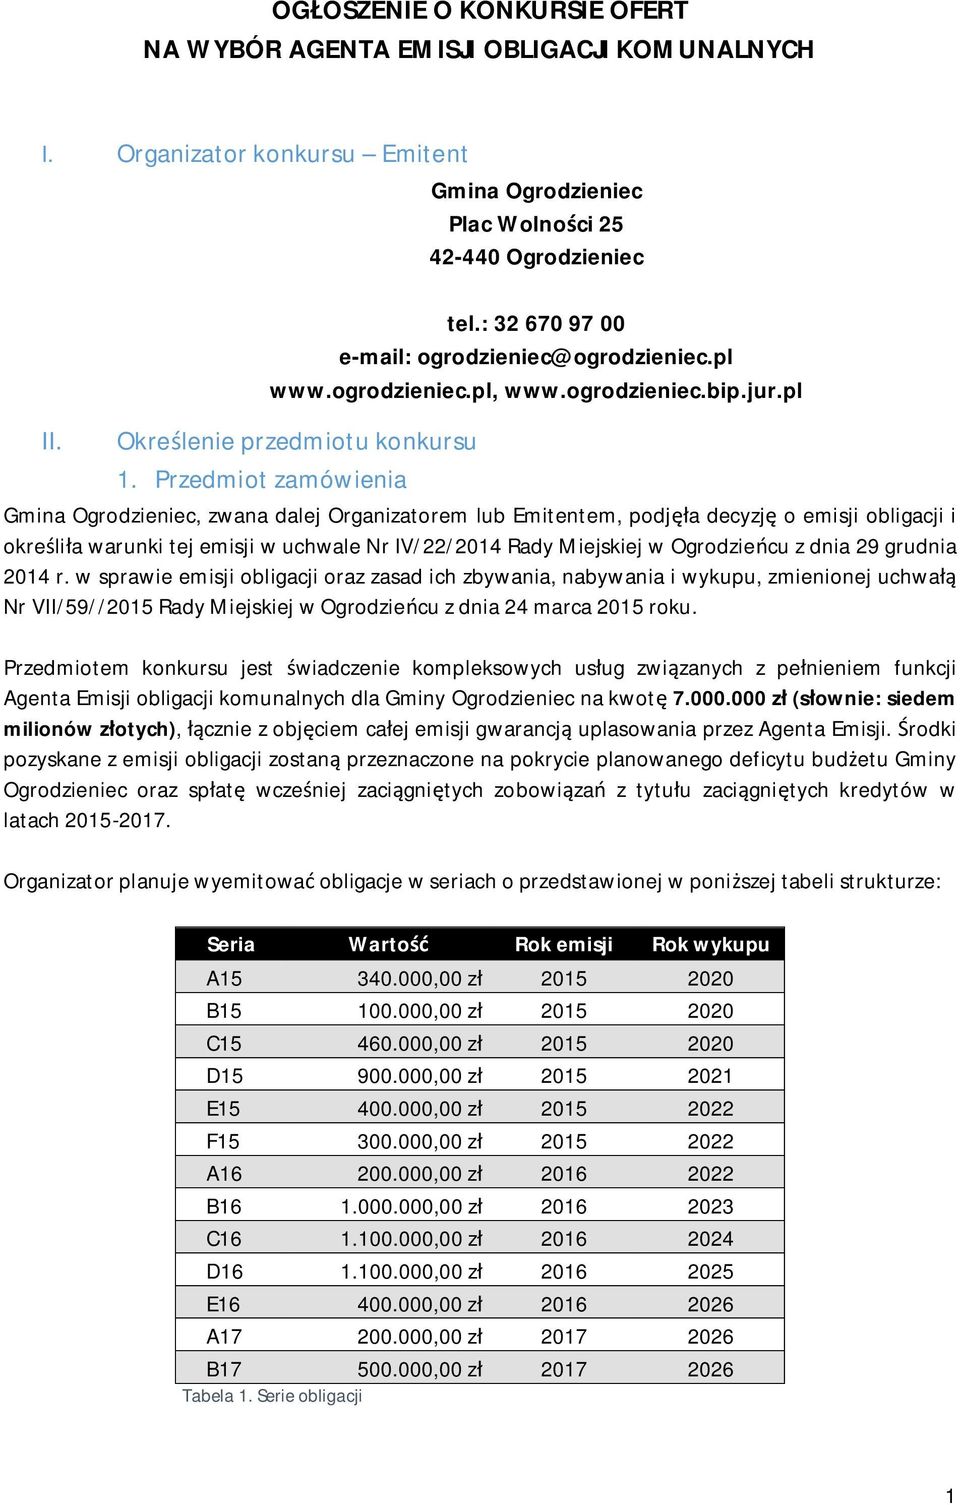 Przedmiot zamówienia Gmina Ogrodzieniec, zwana dalej Organizatorem lub Emitentem, podjęła decyzję o emisji obligacji i określiła warunki tej emisji w uchwale Nr IV/22/2014 Rady Miejskiej w